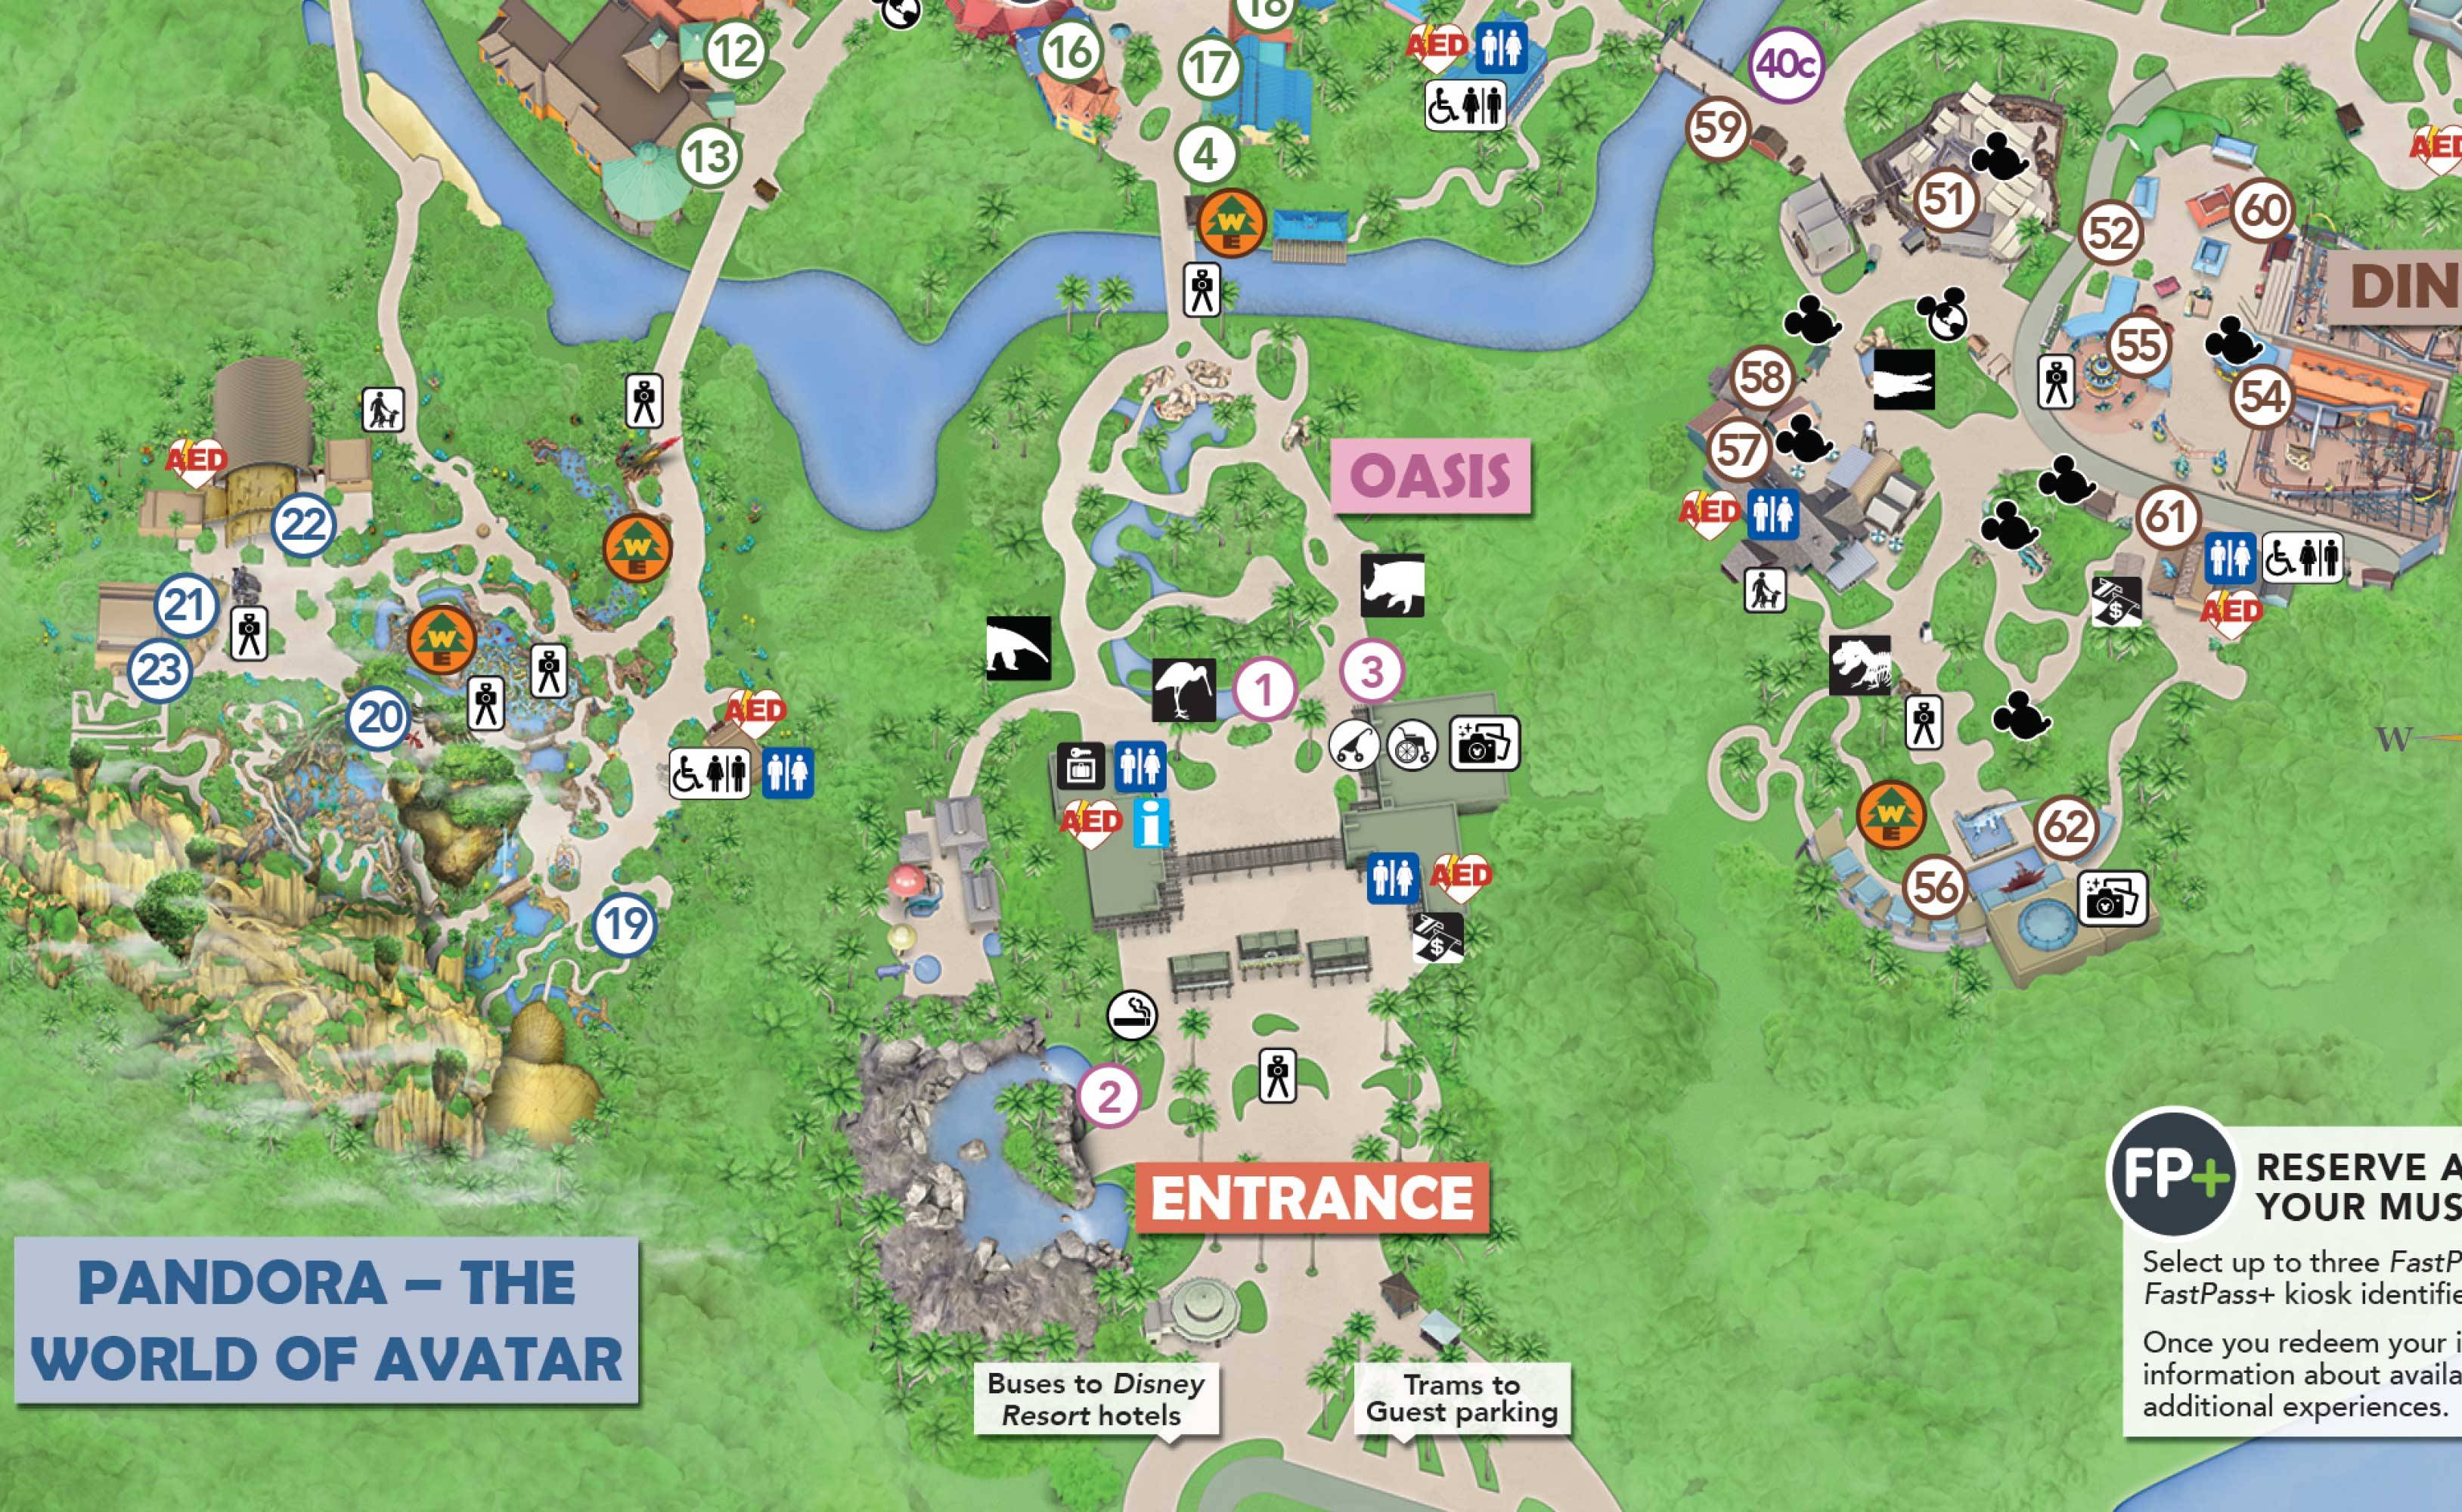 Disney's Animal Kingdom smoking location May 1